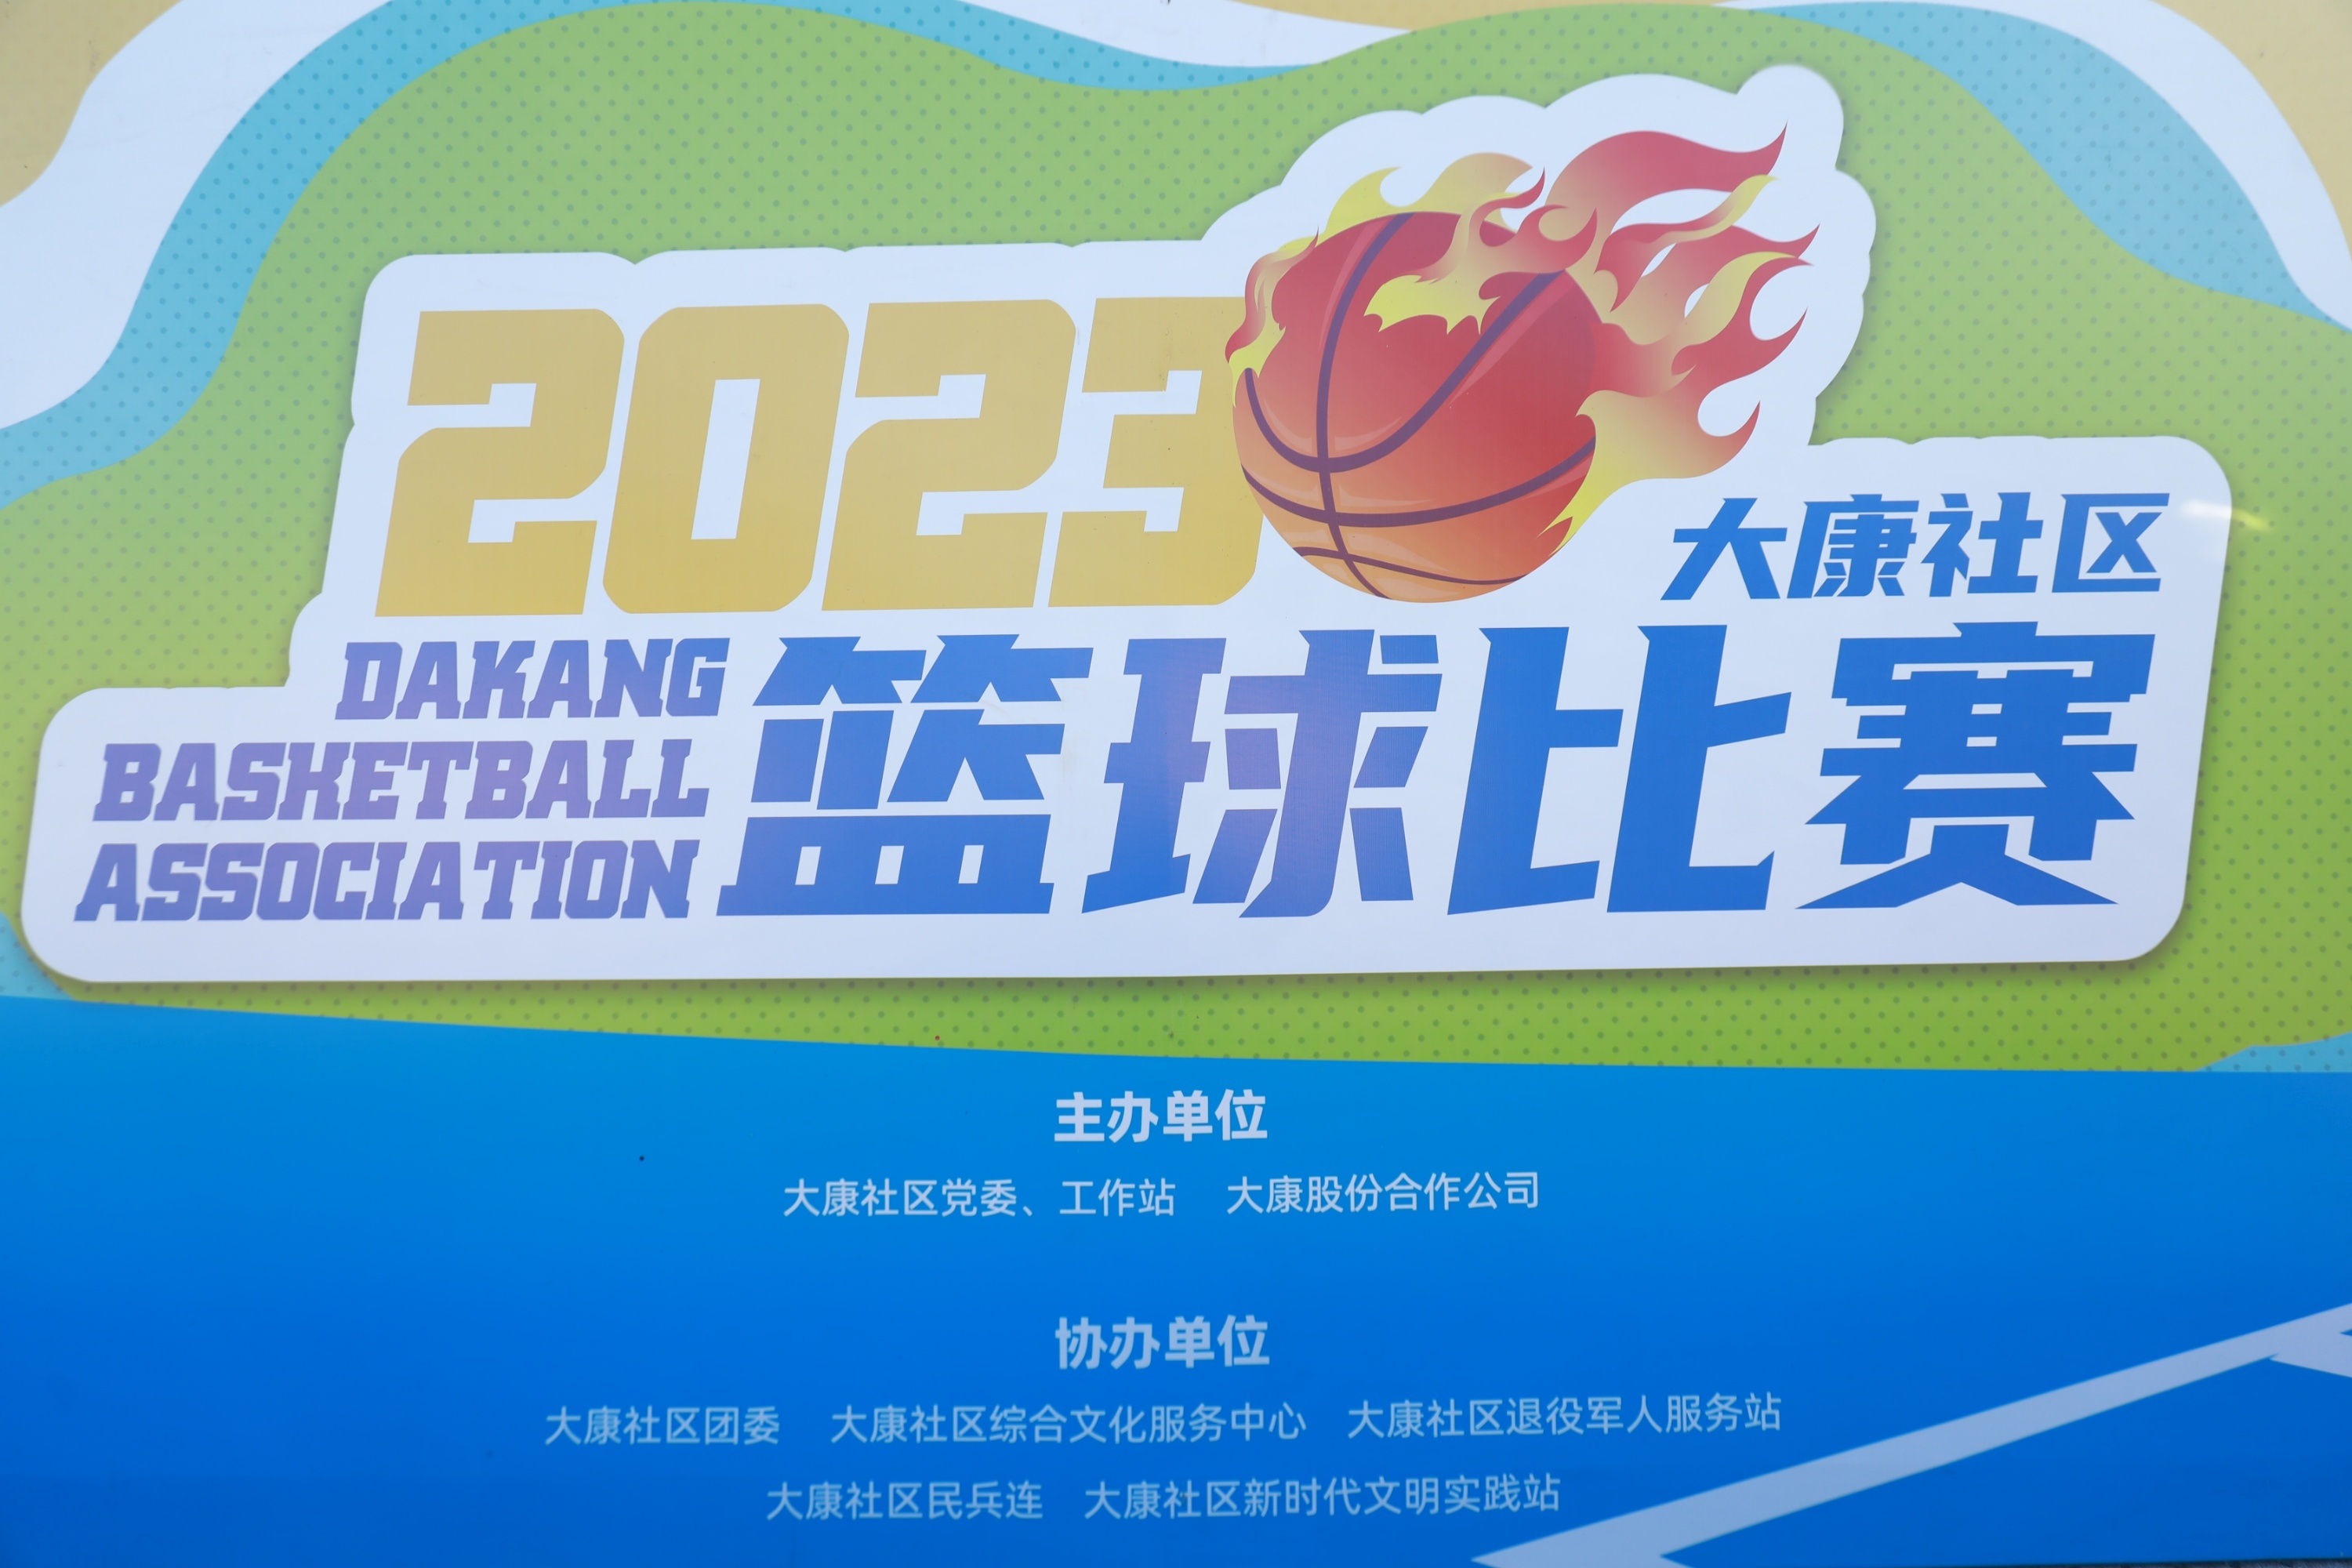 2023年大康社区“齐聚大康 演绎风采”篮球比赛开幕式